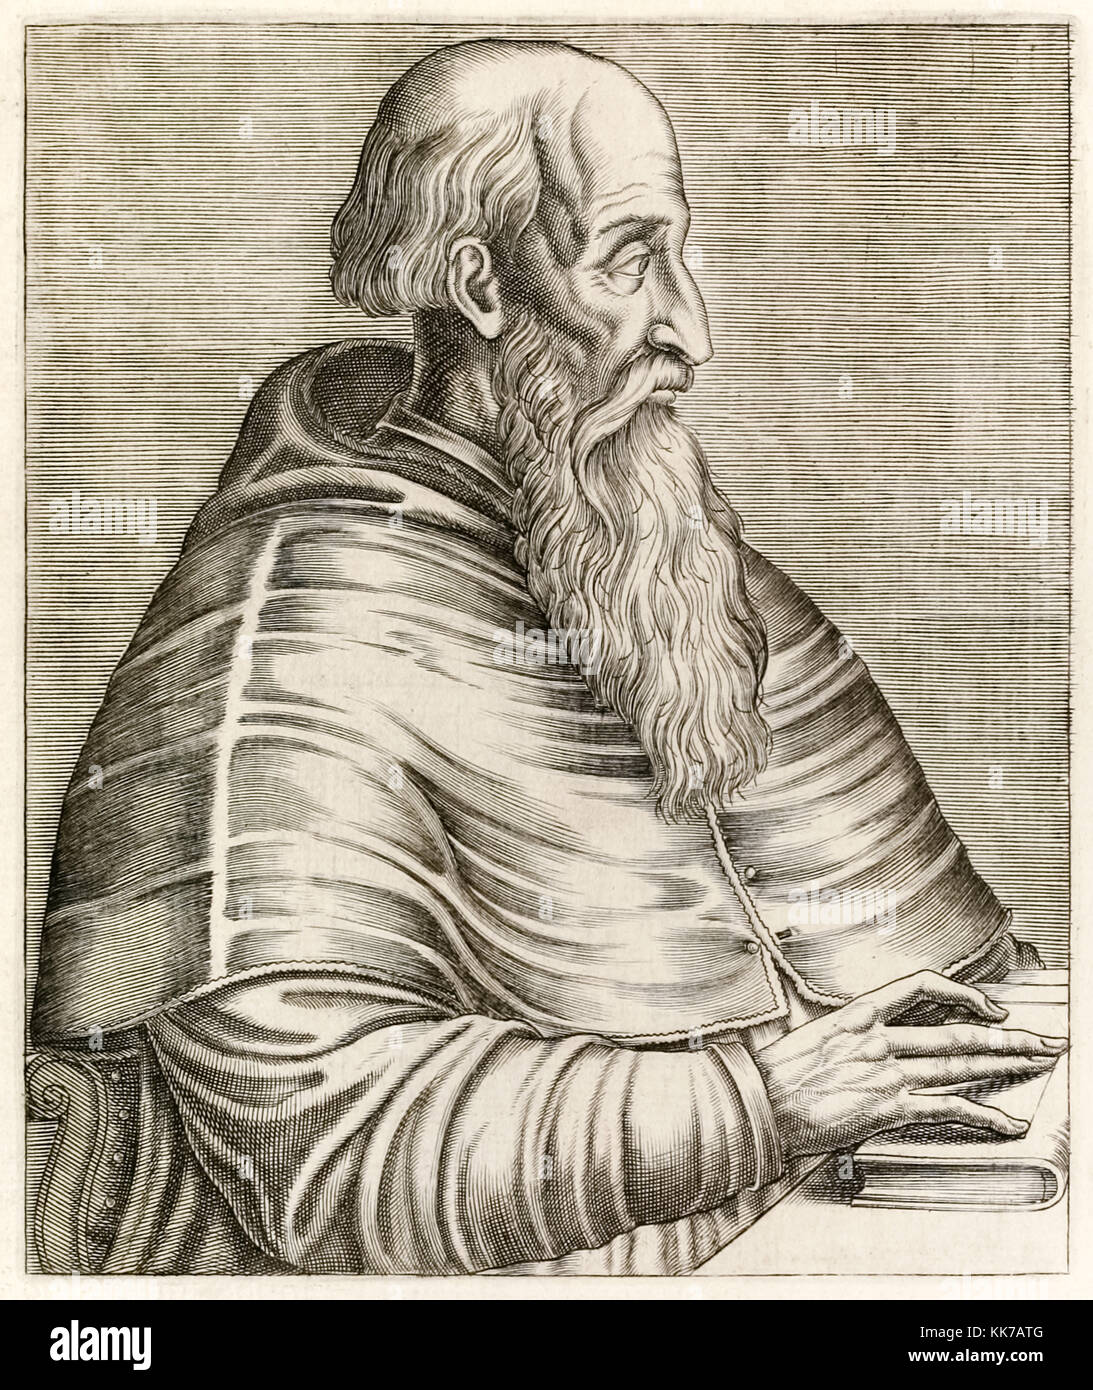 Pietro Bembo (1470-1547) venezianischen und italienischen Gelehrten und Dichter, dessen einflussreichsten Arbeit war "Prose della volgar Lingua'' über das Schreiben von Lyrik in Italienisch. Gravur von "True Porträts…" von André Thévet (1516-1590) im Jahre 1584 veröffentlicht. Stockfoto